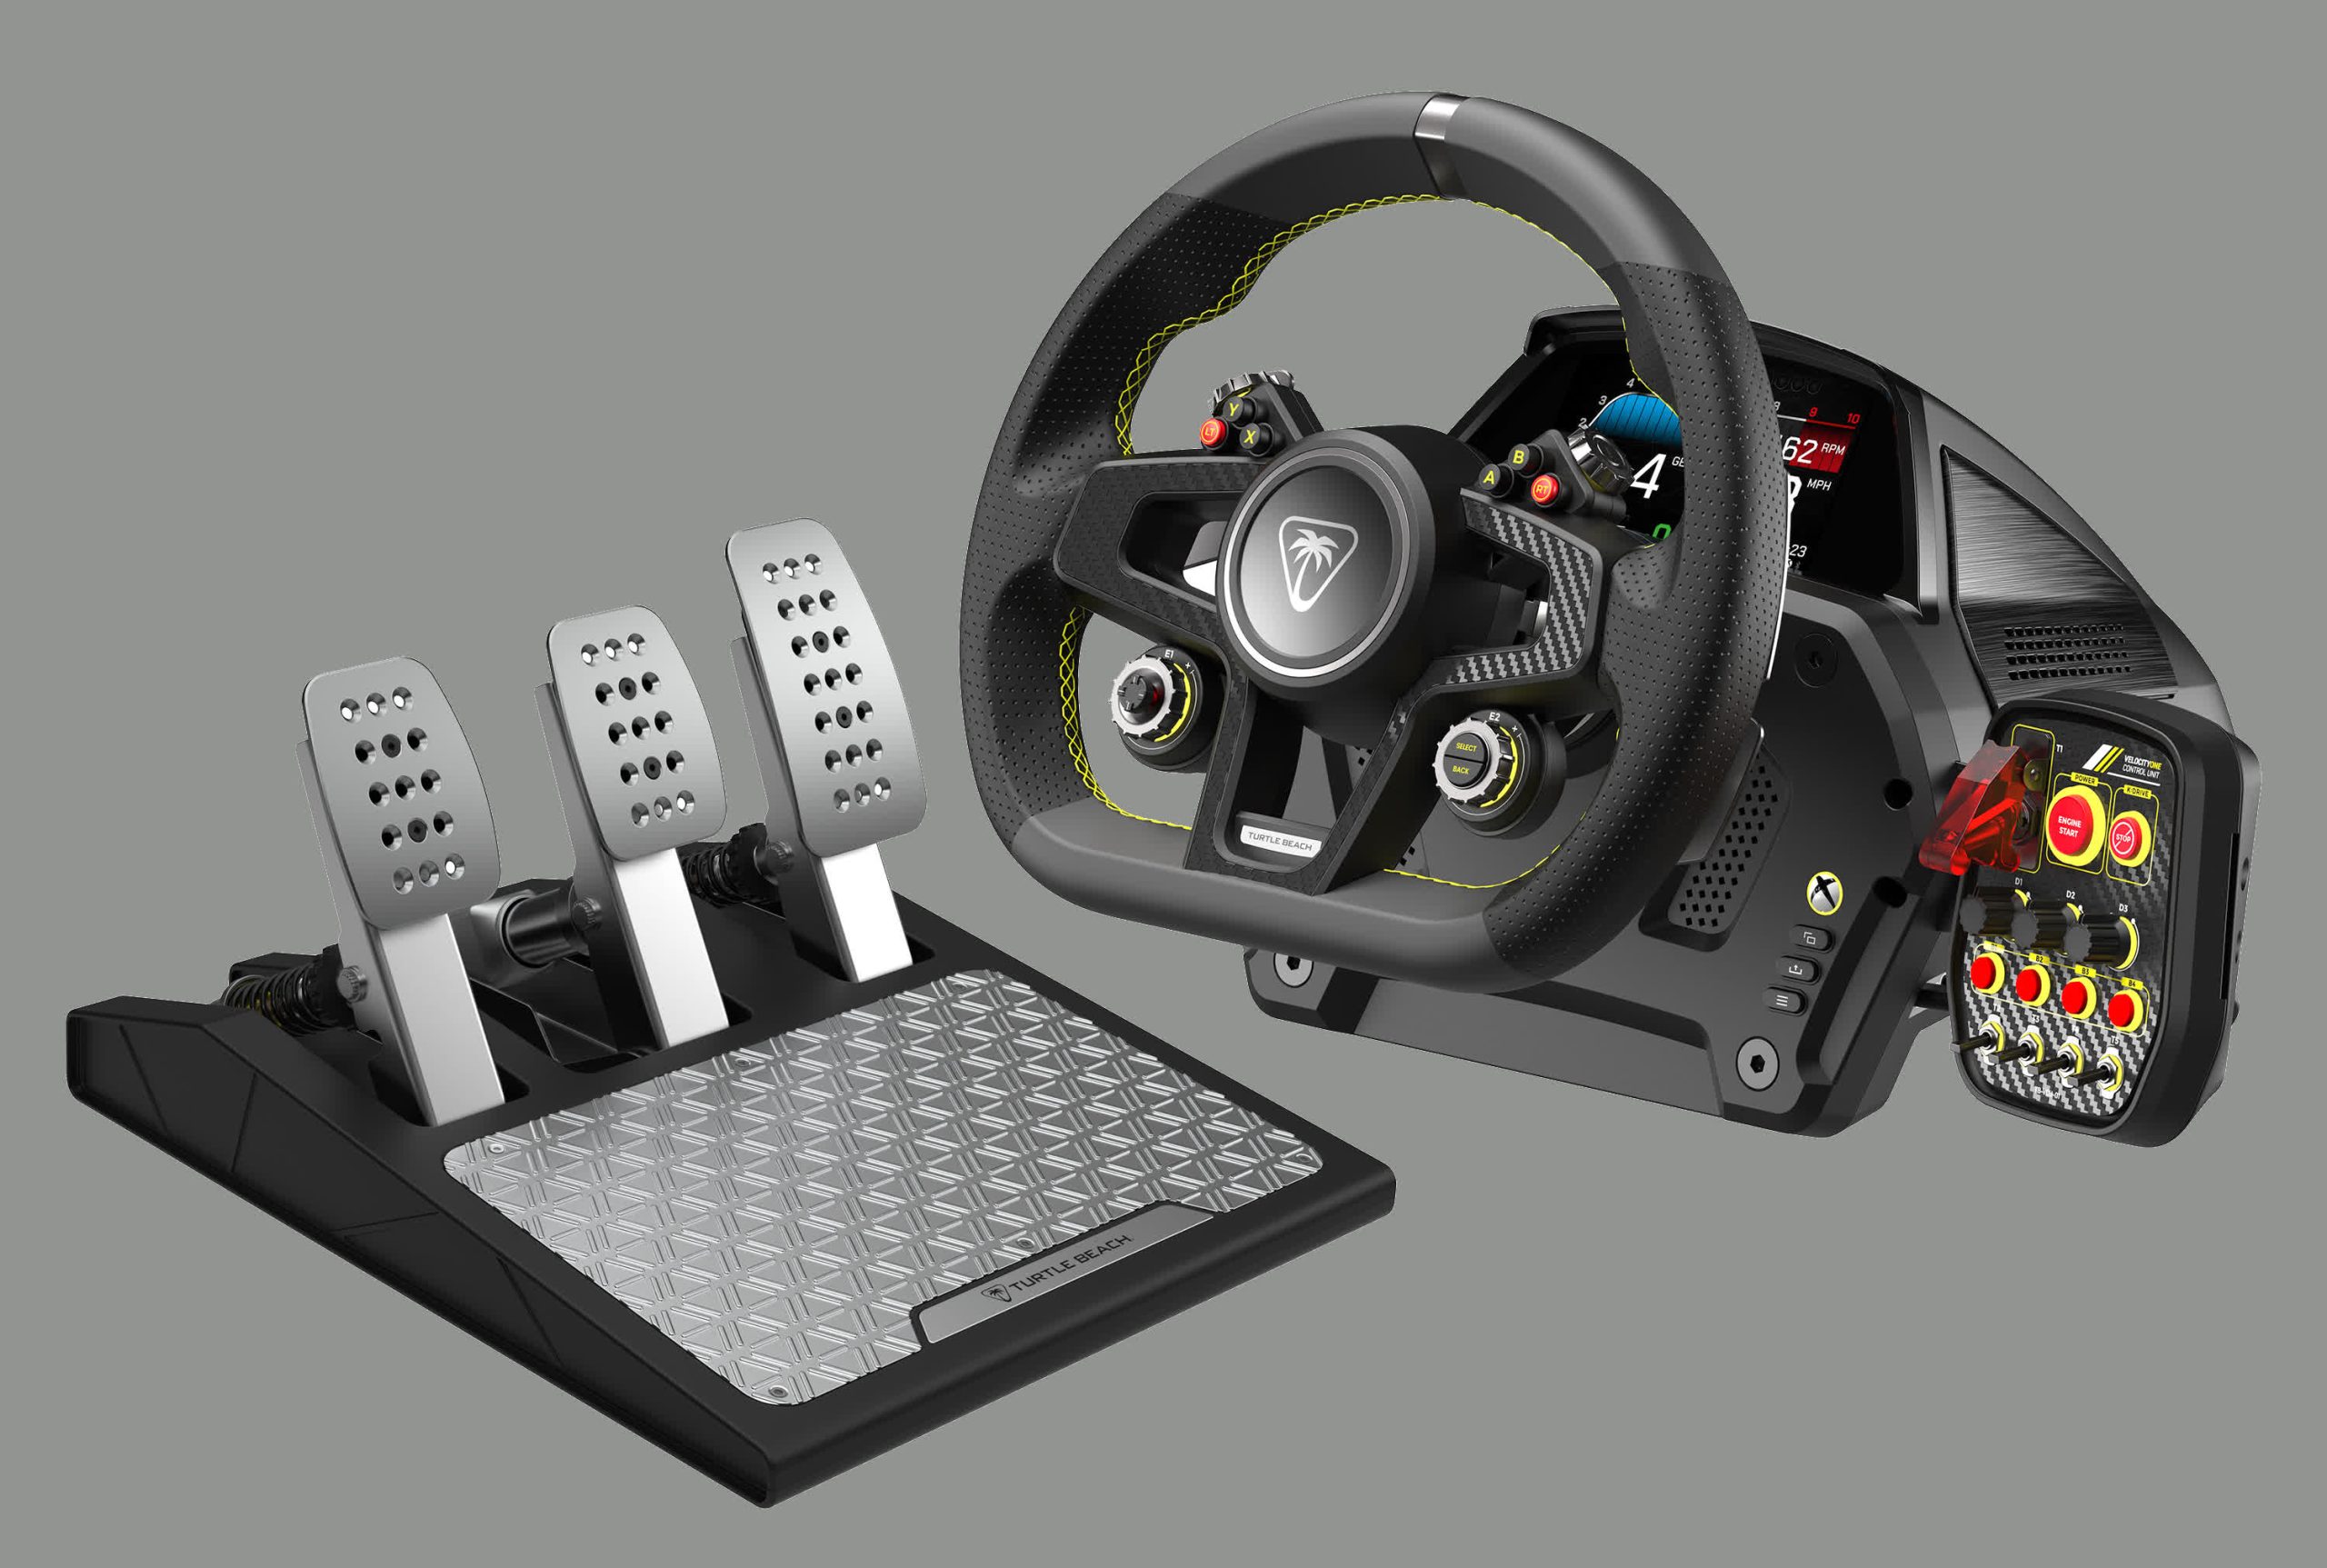 El nuevo kit de pedales y volante de carreras de Turtle Beach incluye un tablero digital y retroalimentación de fuerza de conducción directa